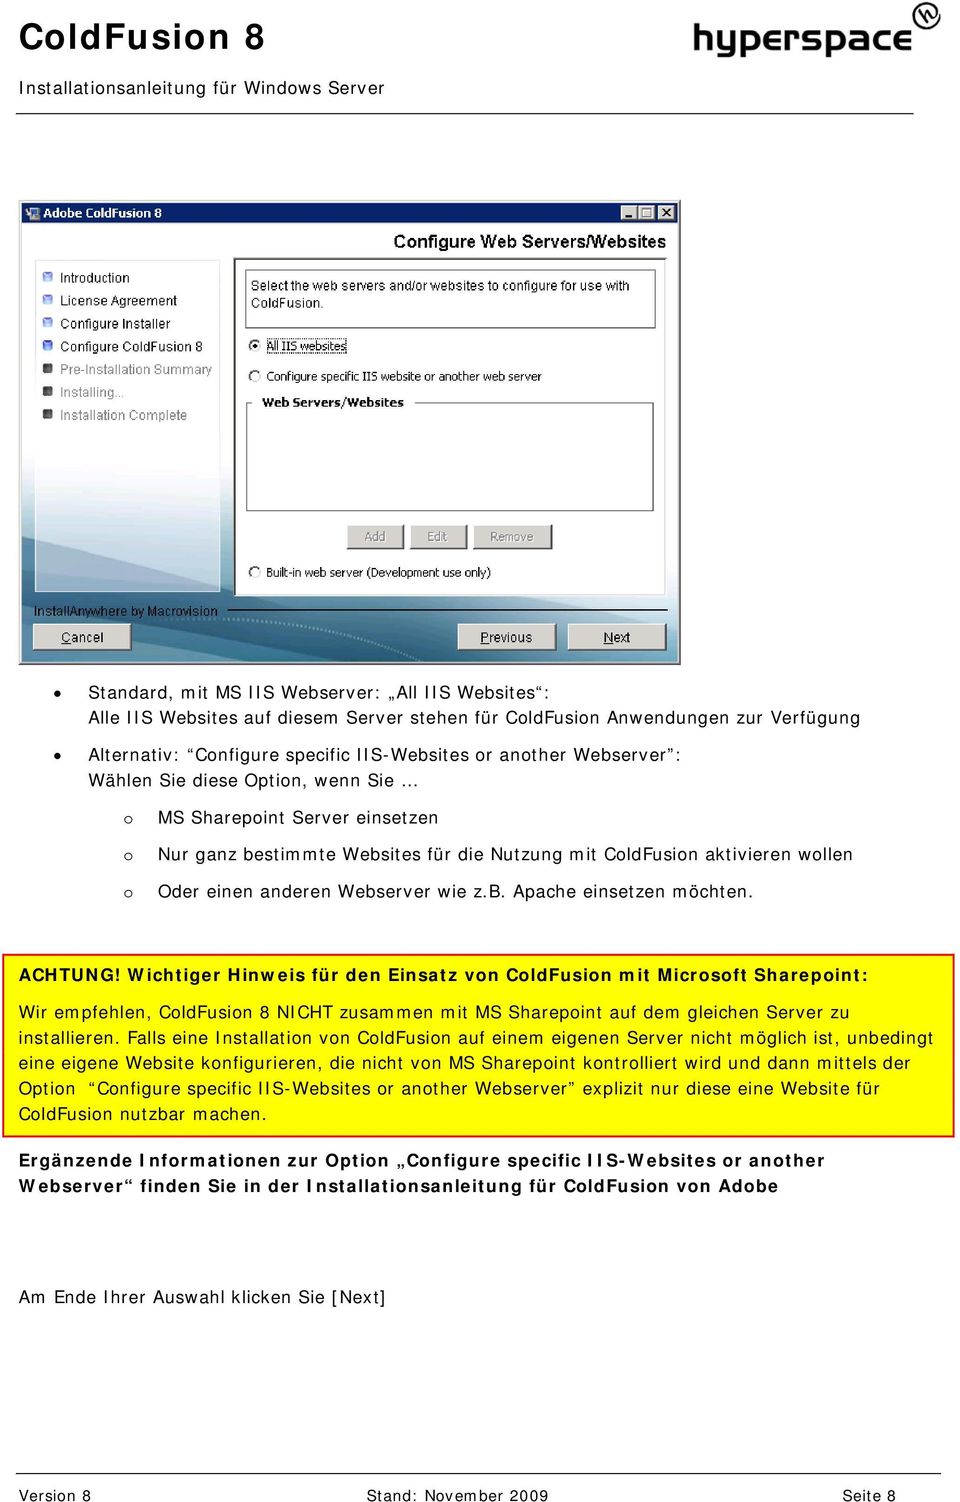 ACHTUNG! Wichtiger Hinweis für den Einsatz von ColdFusion mit Microsoft Sharepoint: Wir empfehlen, ColdFusion 8 NICHT zusammen mit MS Sharepoint auf dem gleichen Server zu installieren.